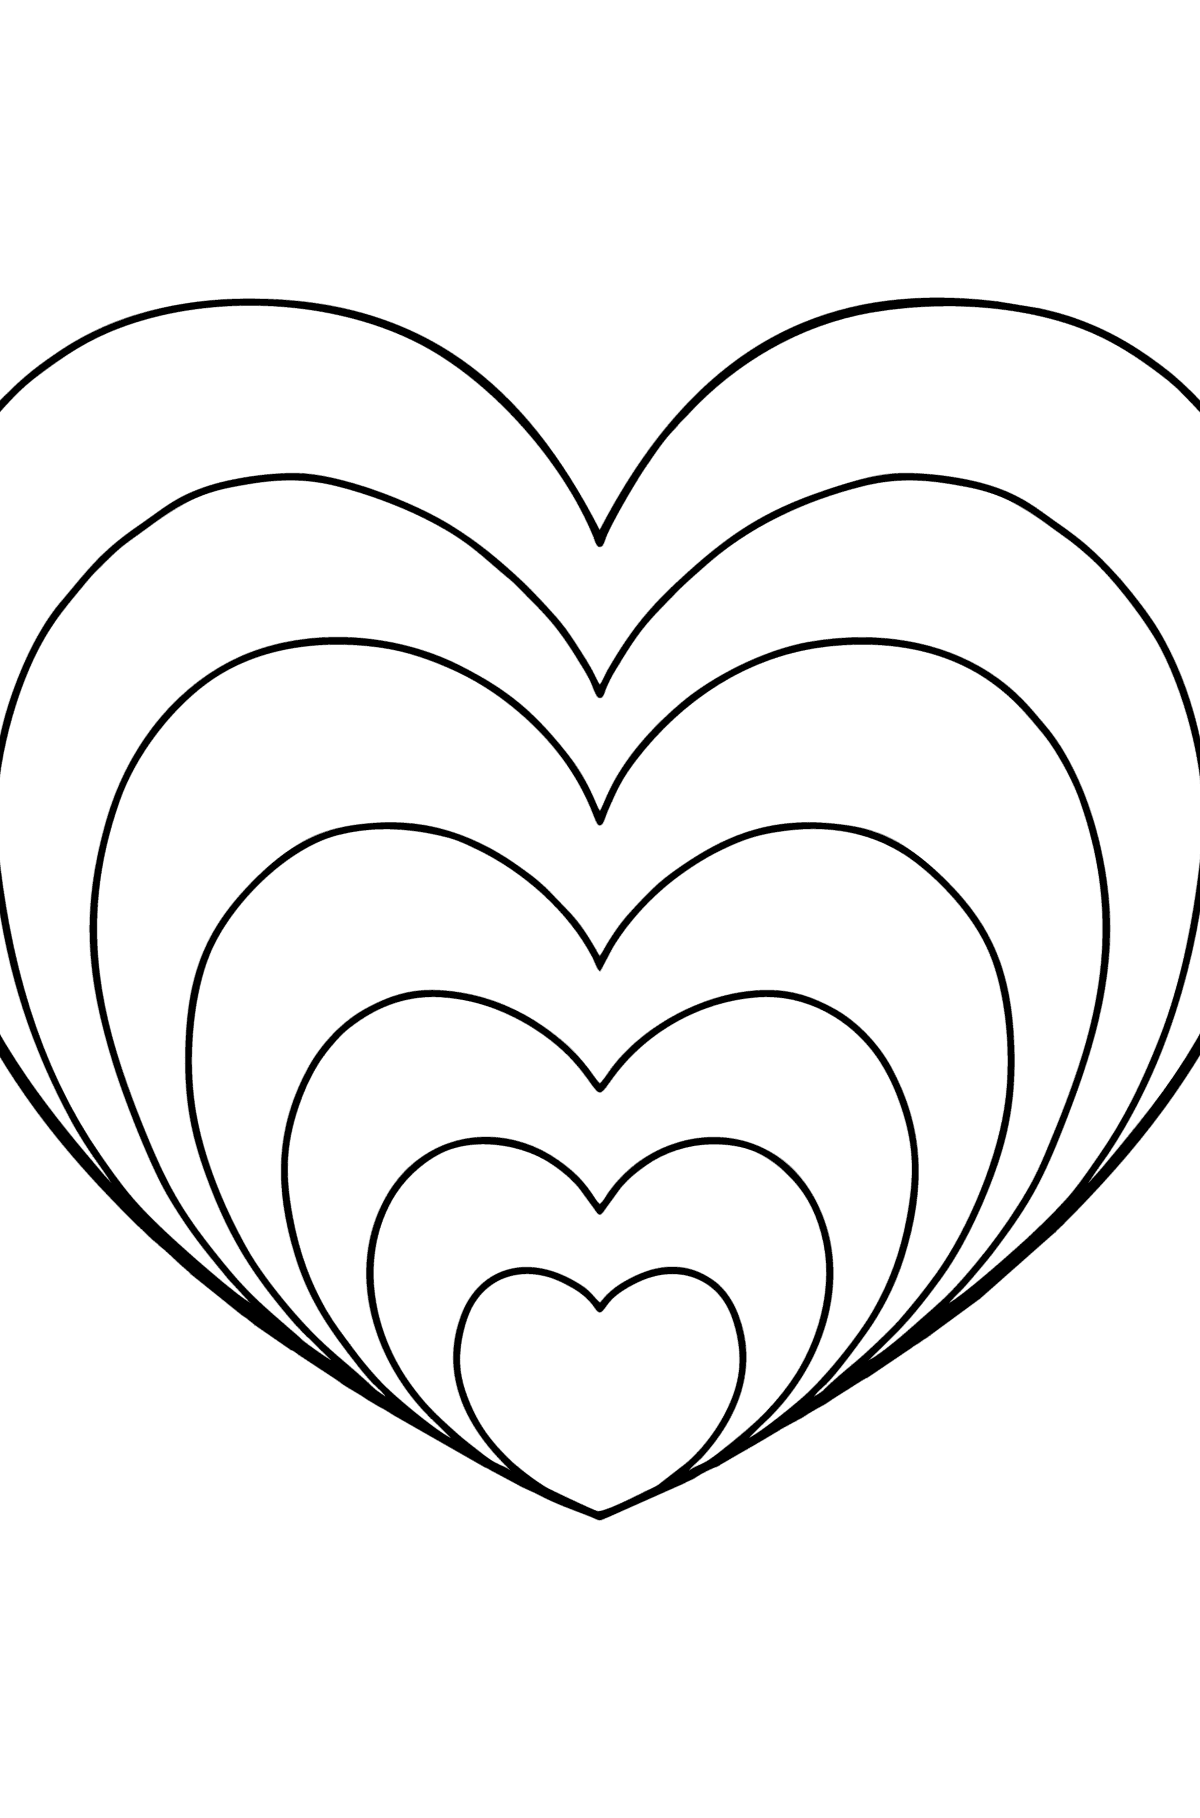 Desenho para colorir de coração Zen simples - Imagens para Colorir para Crianças